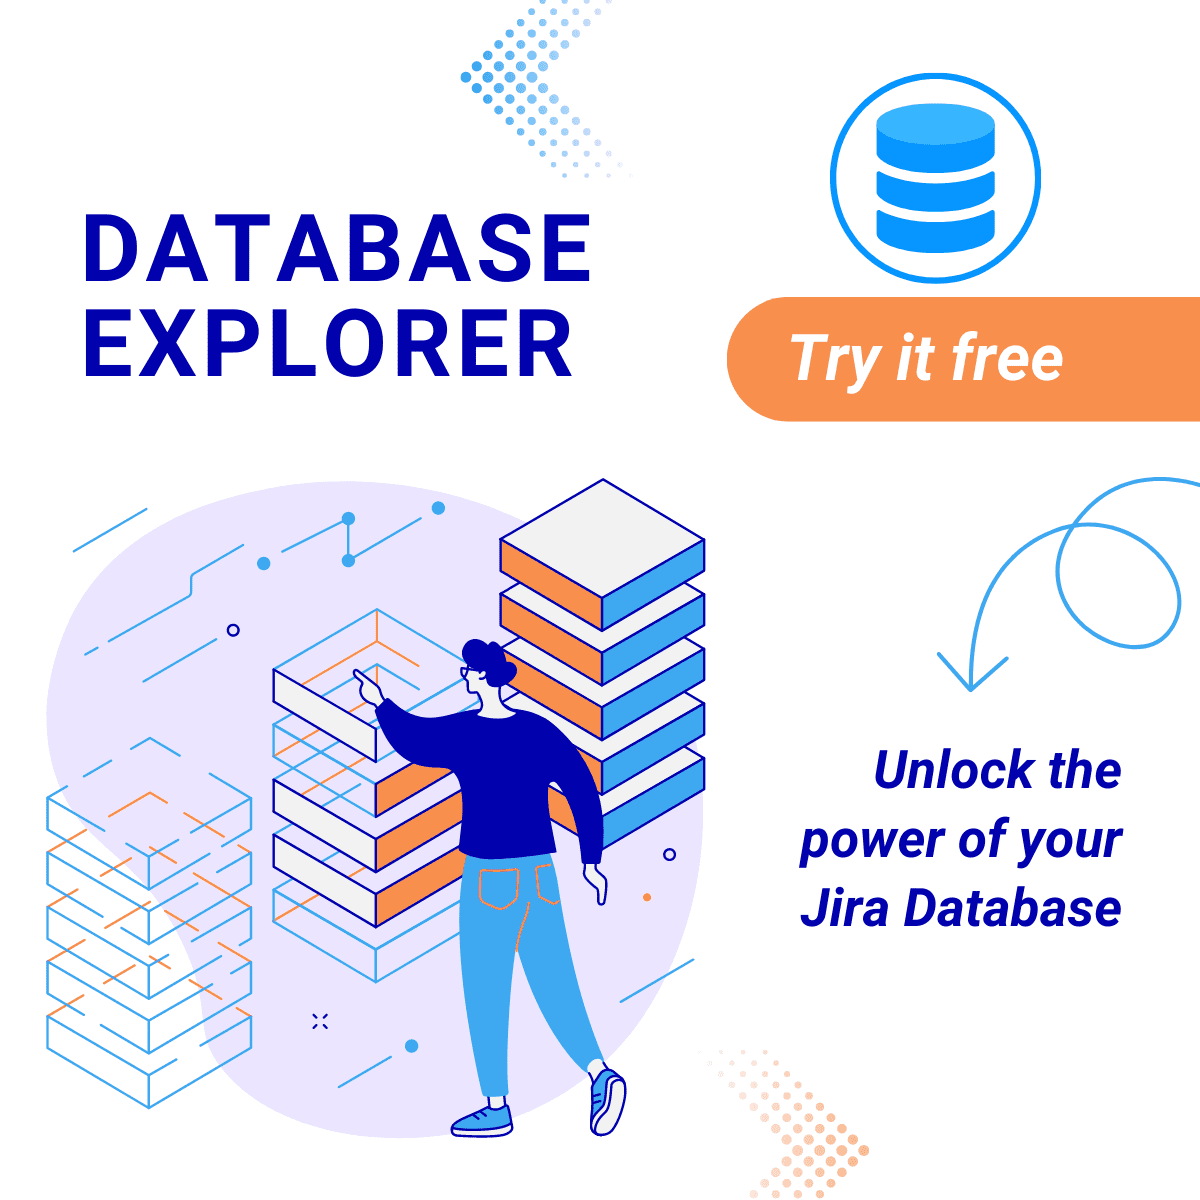 DataBase Explorer App Graphic by Sevidev